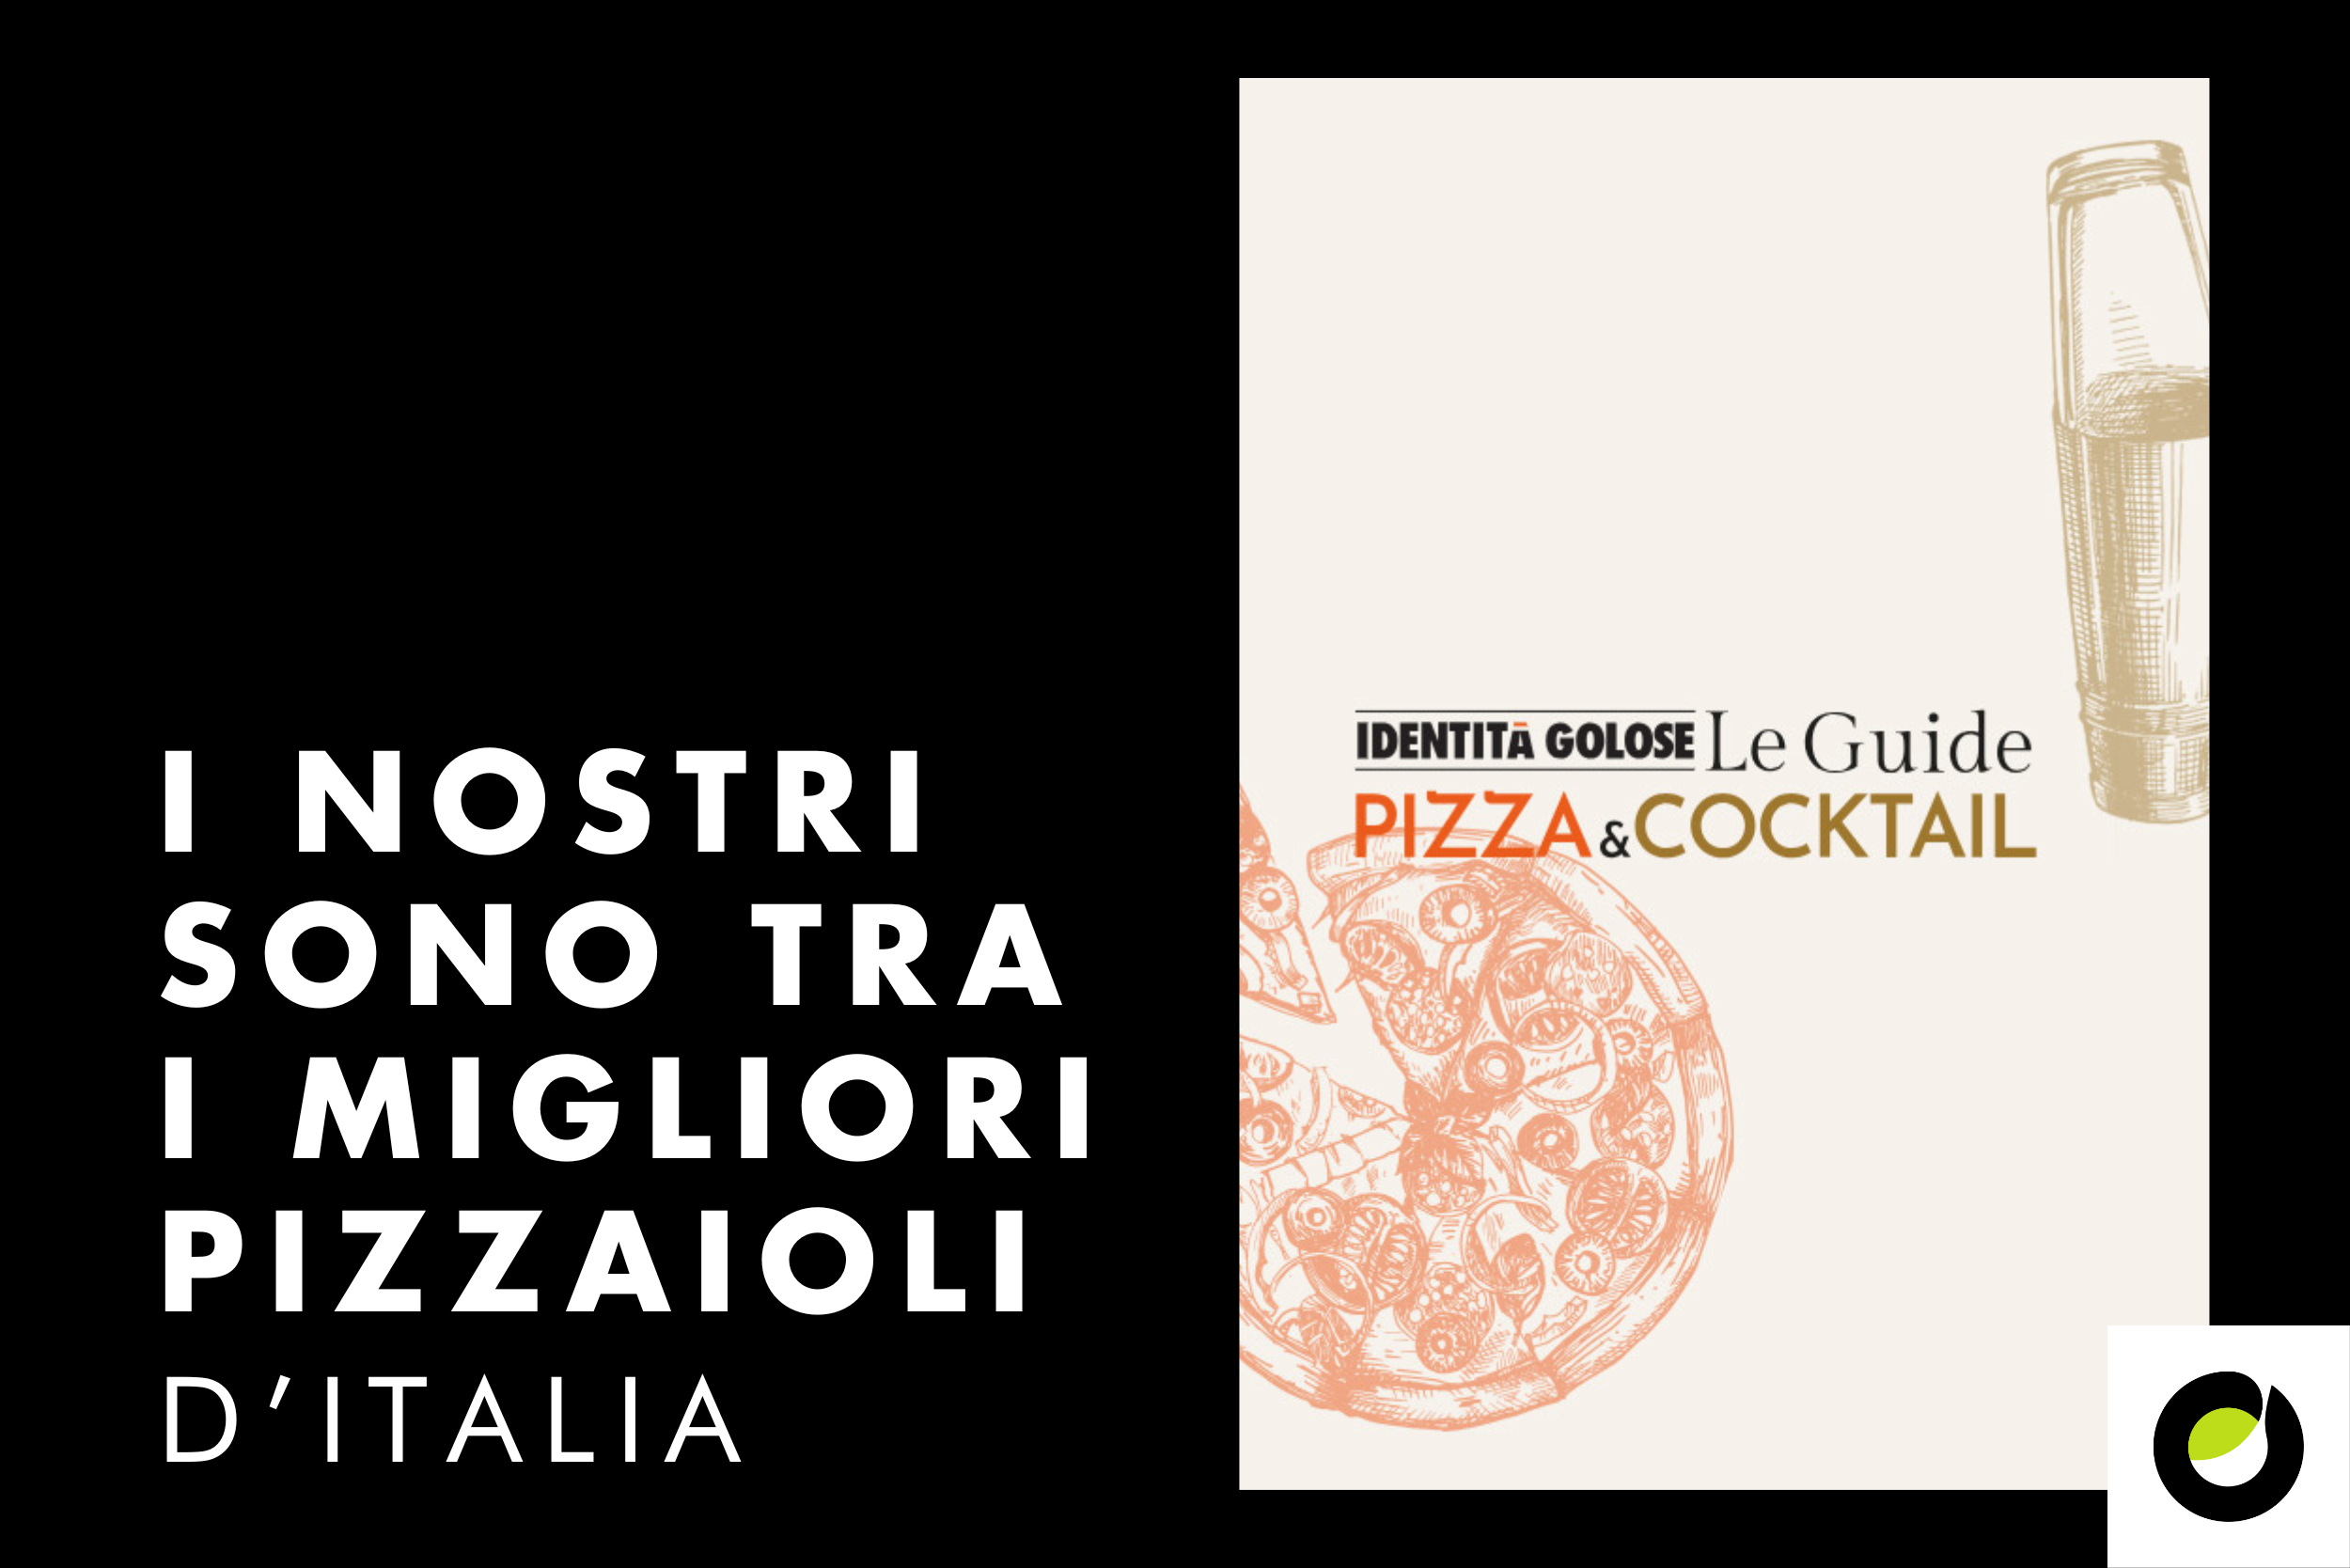 AROMI a fianco dei maestri pizzaioli scelti tra i migliori d’Italia nella nuova Guida Pizza & Cocktail Bar D’Autore di Identità Golose.